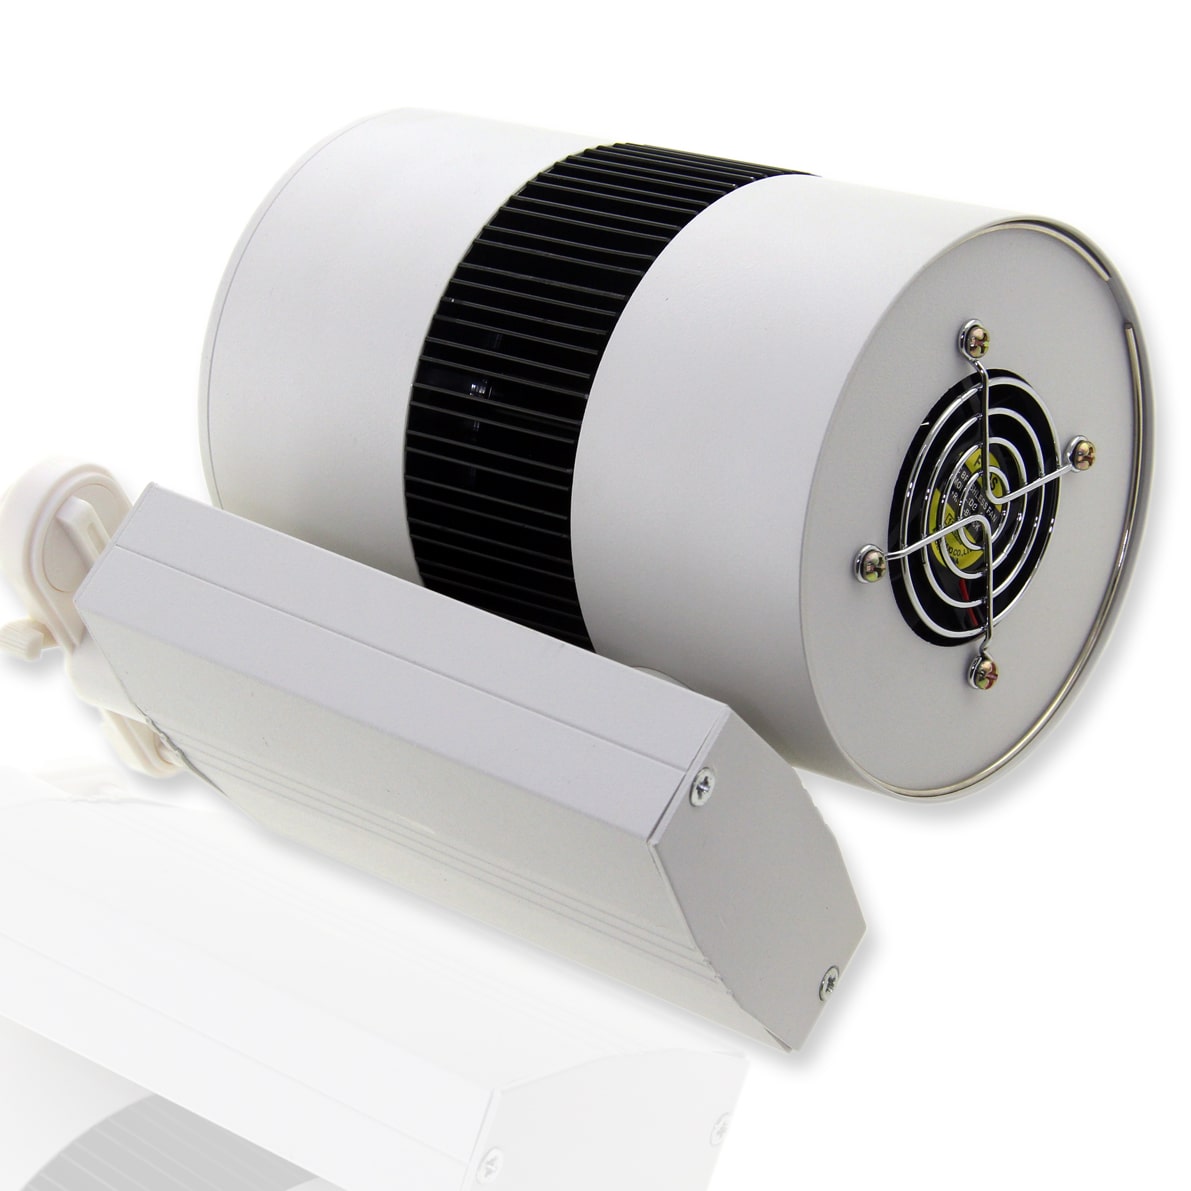 Светодиодный светильник трековый 2L PX17 (35W, 220V, Day White)